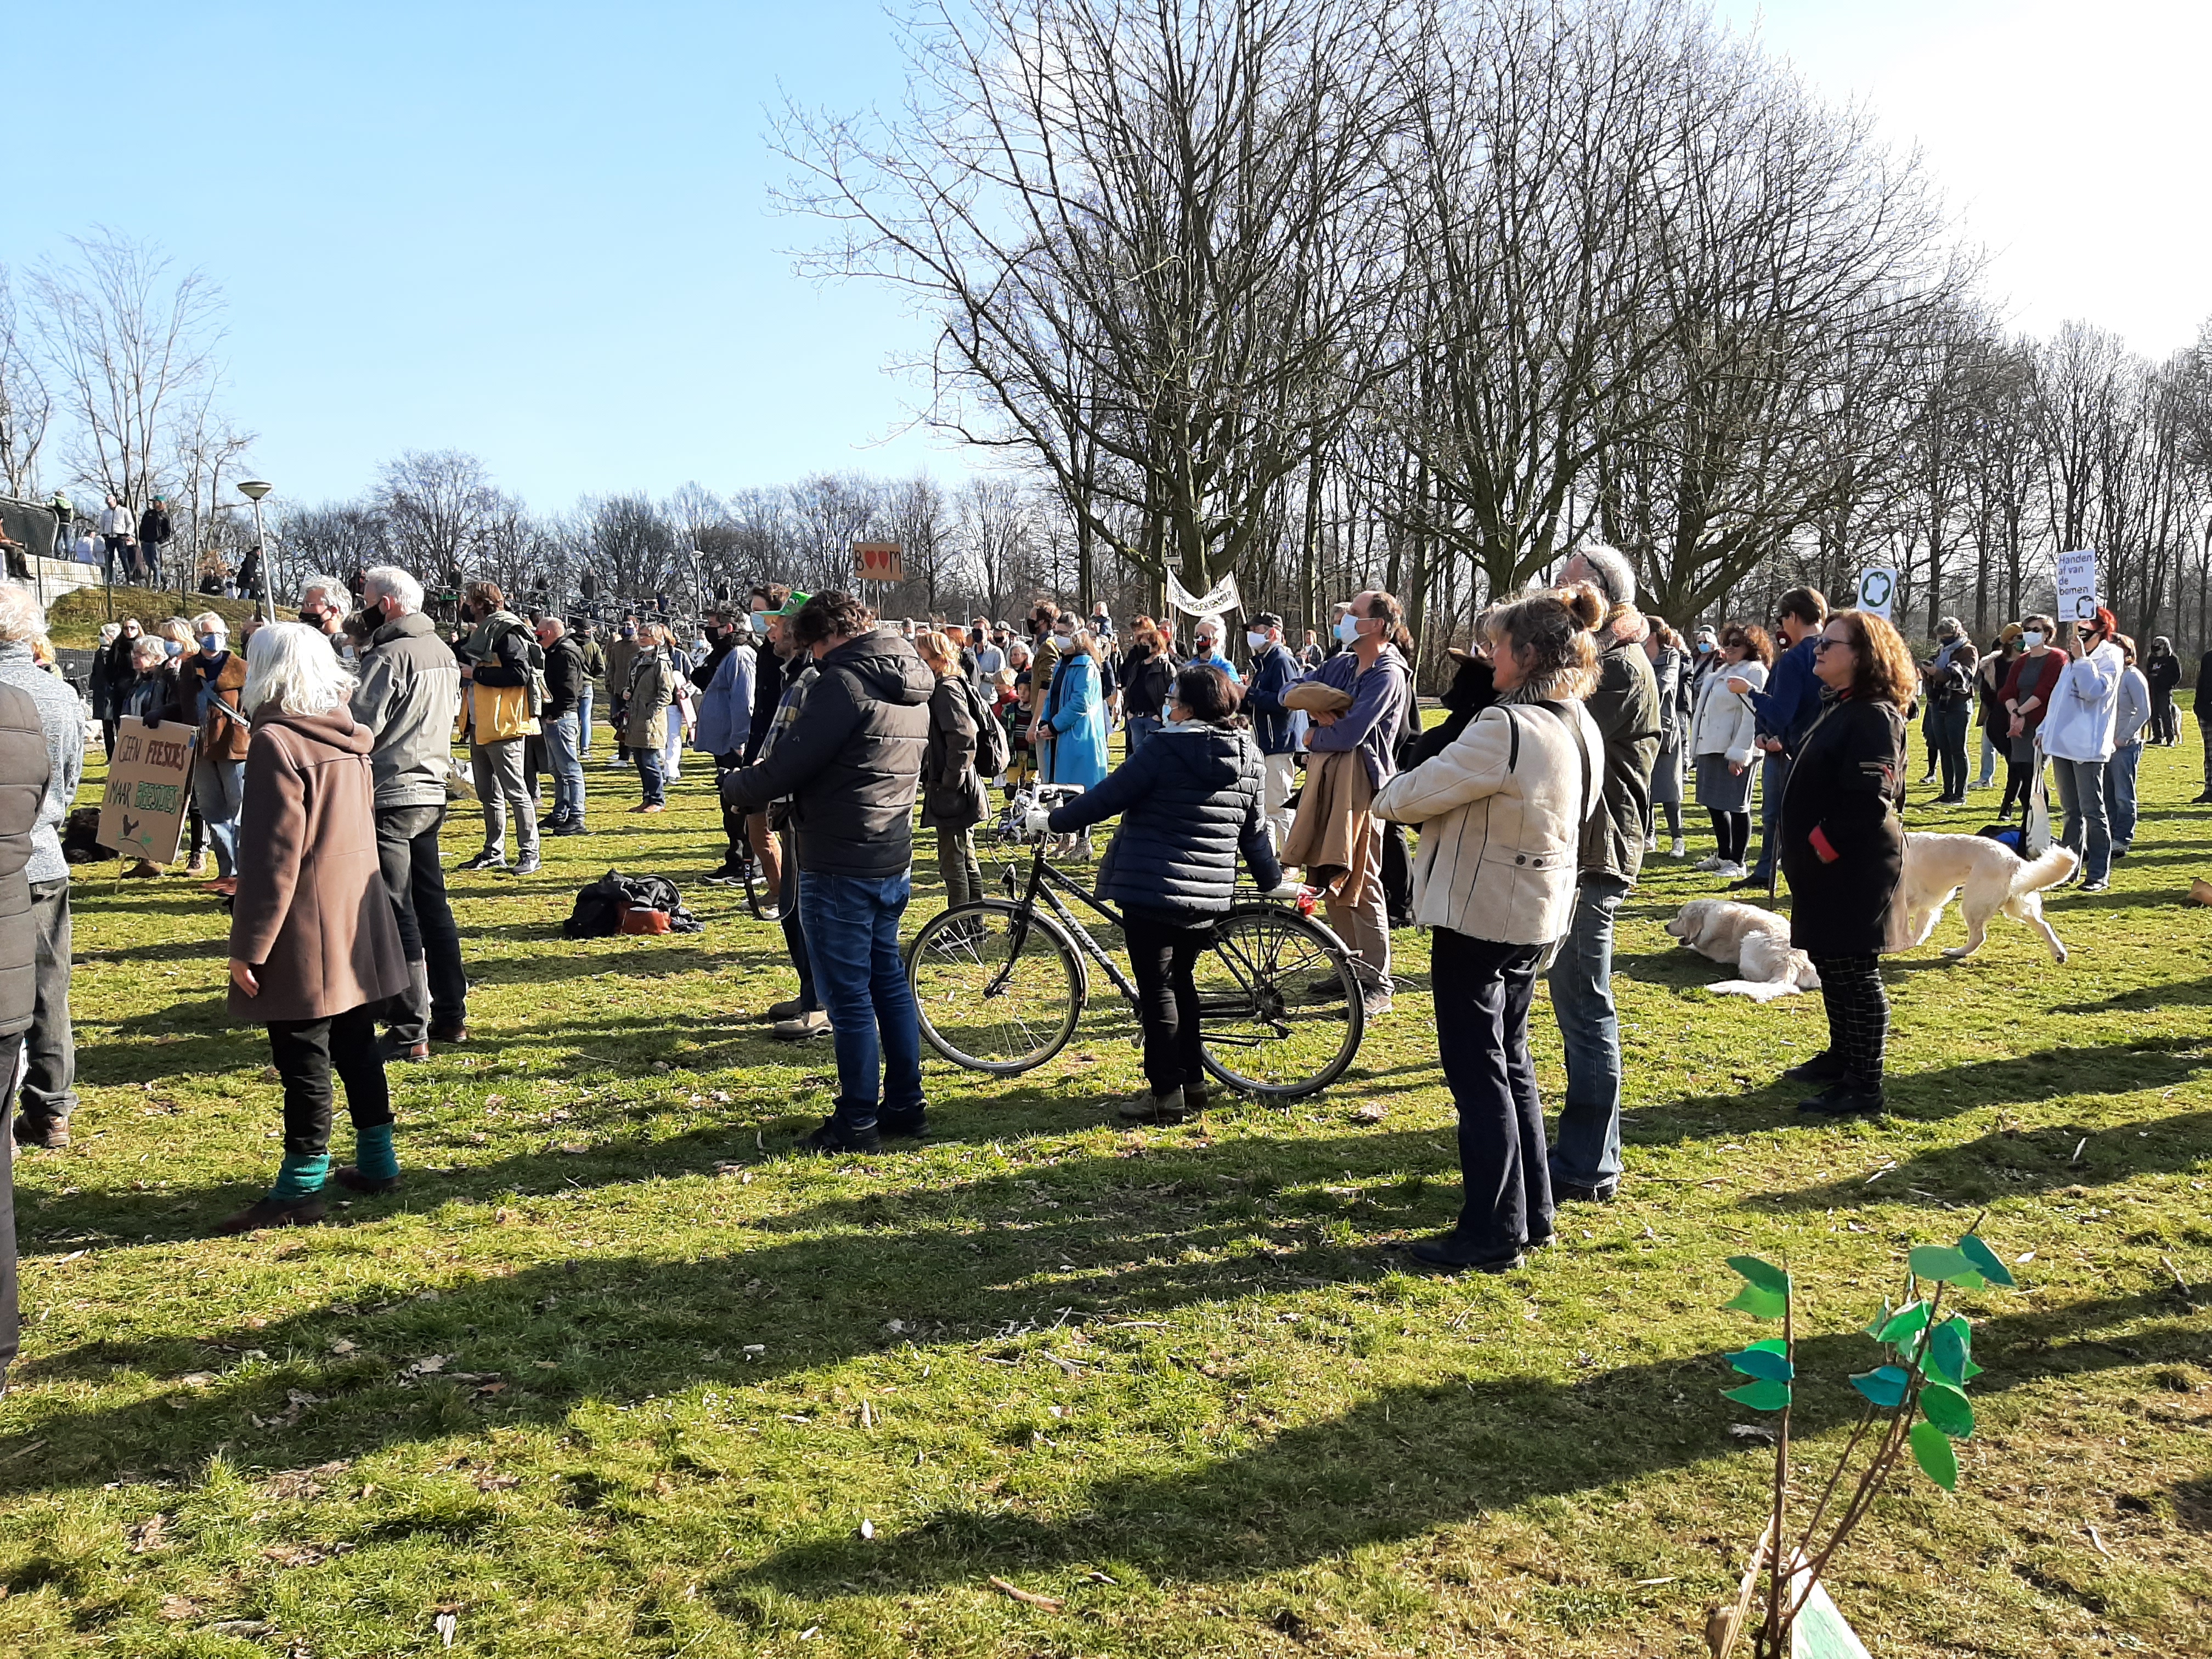 Amsterdam NoordAanbieden manifest aan BM Halsema.jpg Demonstratie Noorderpark tegen kap bomen en aanleg evenemententerrein